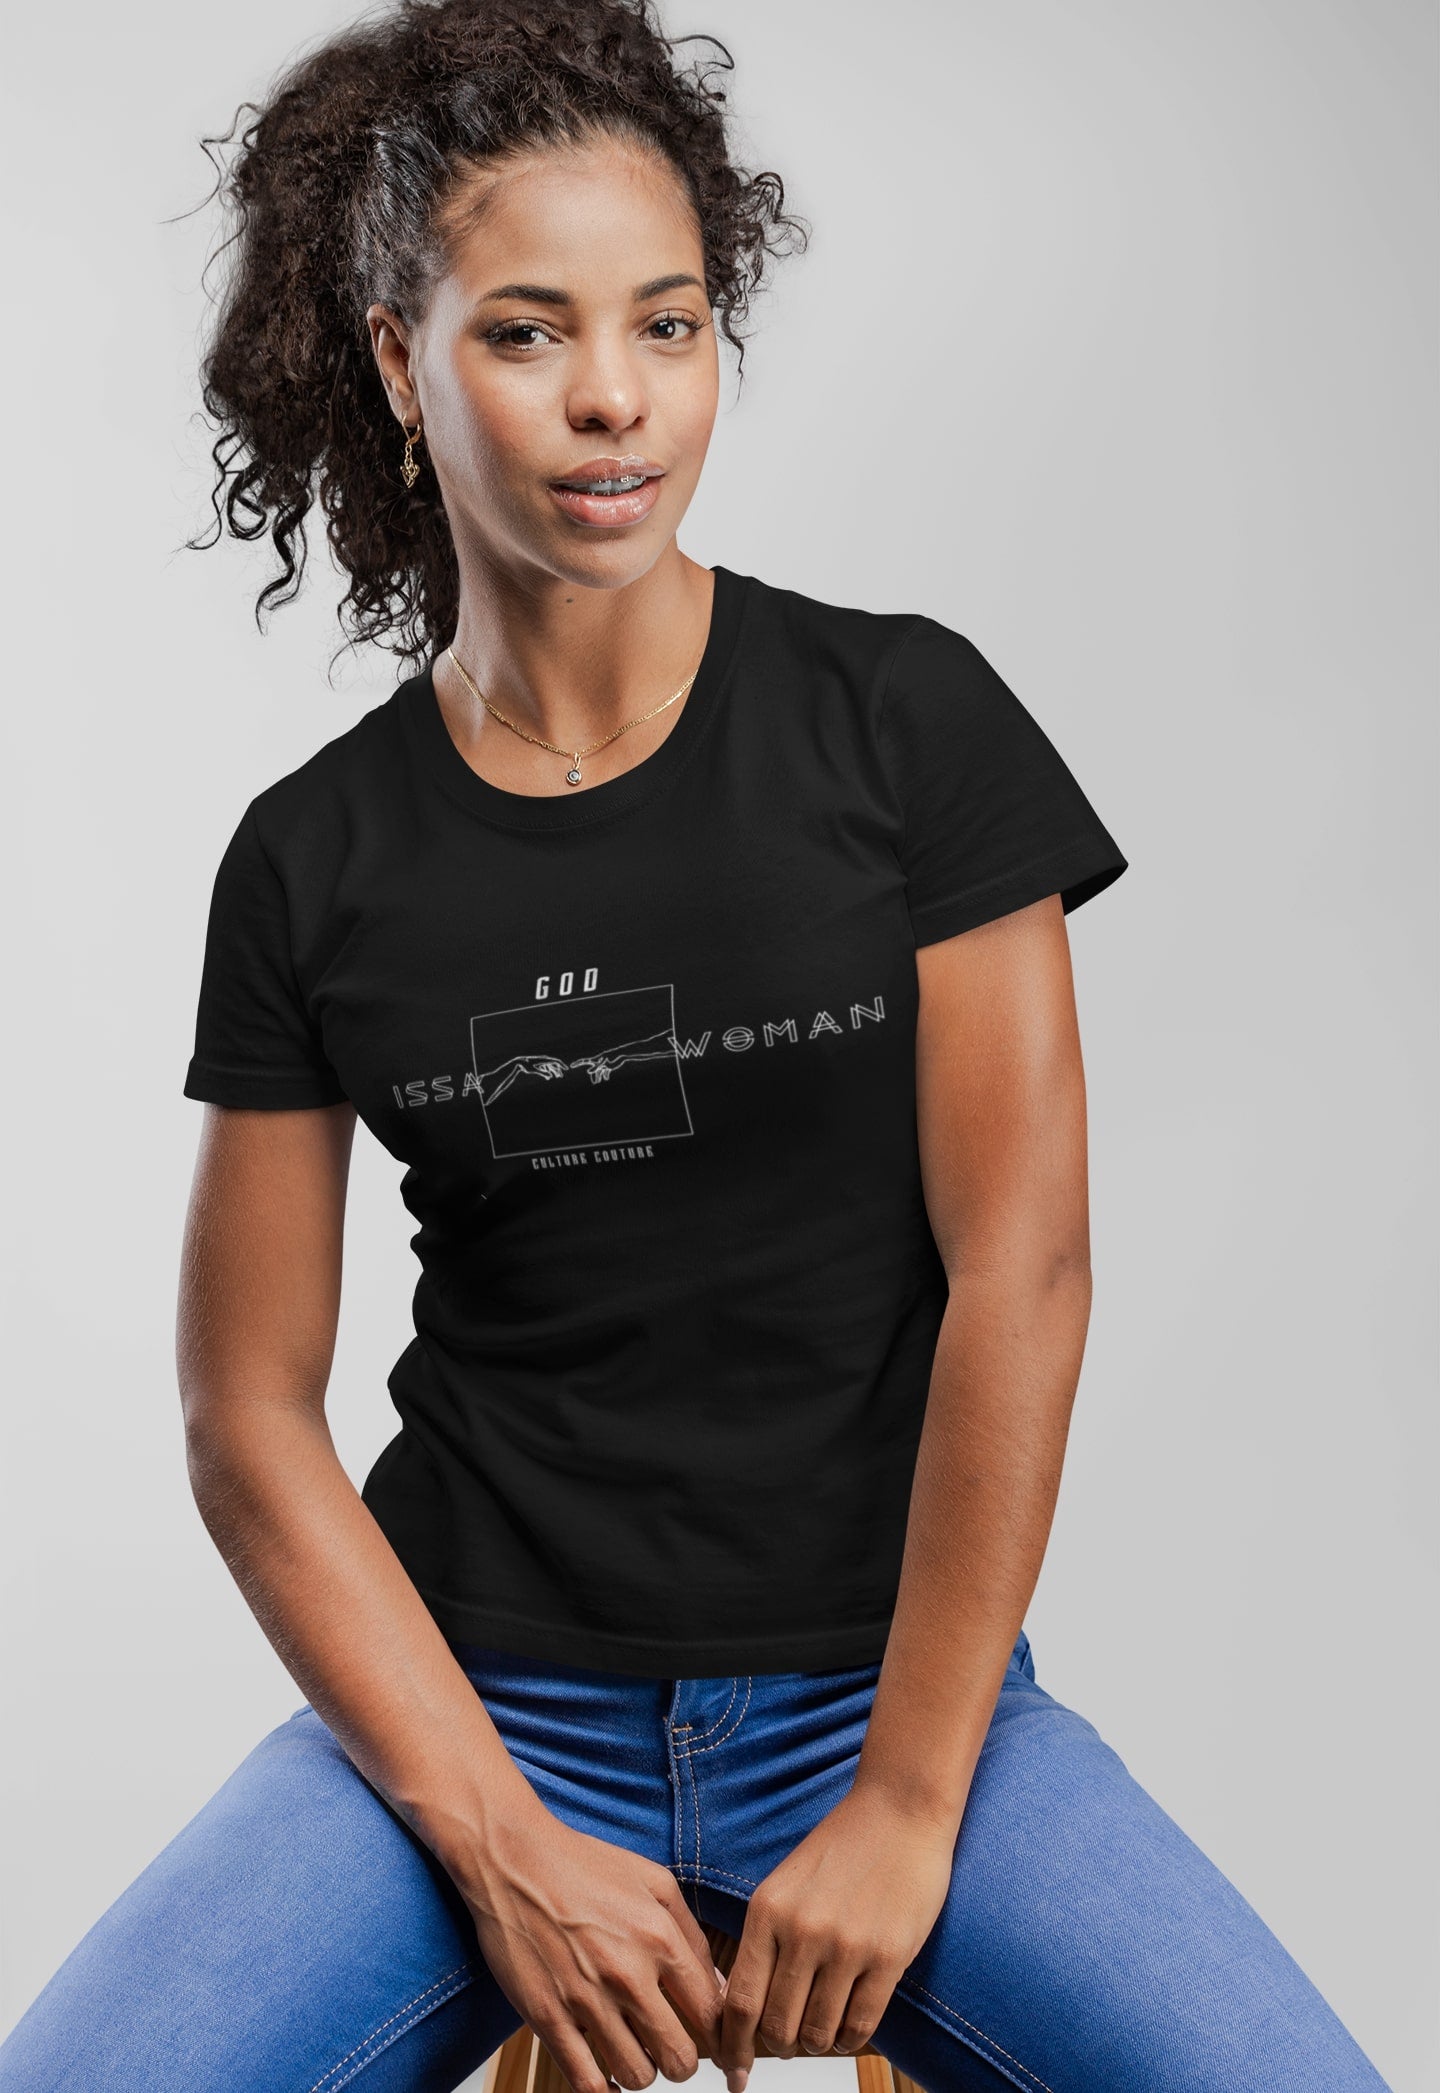 God Issa Woman T-Shirt/Black